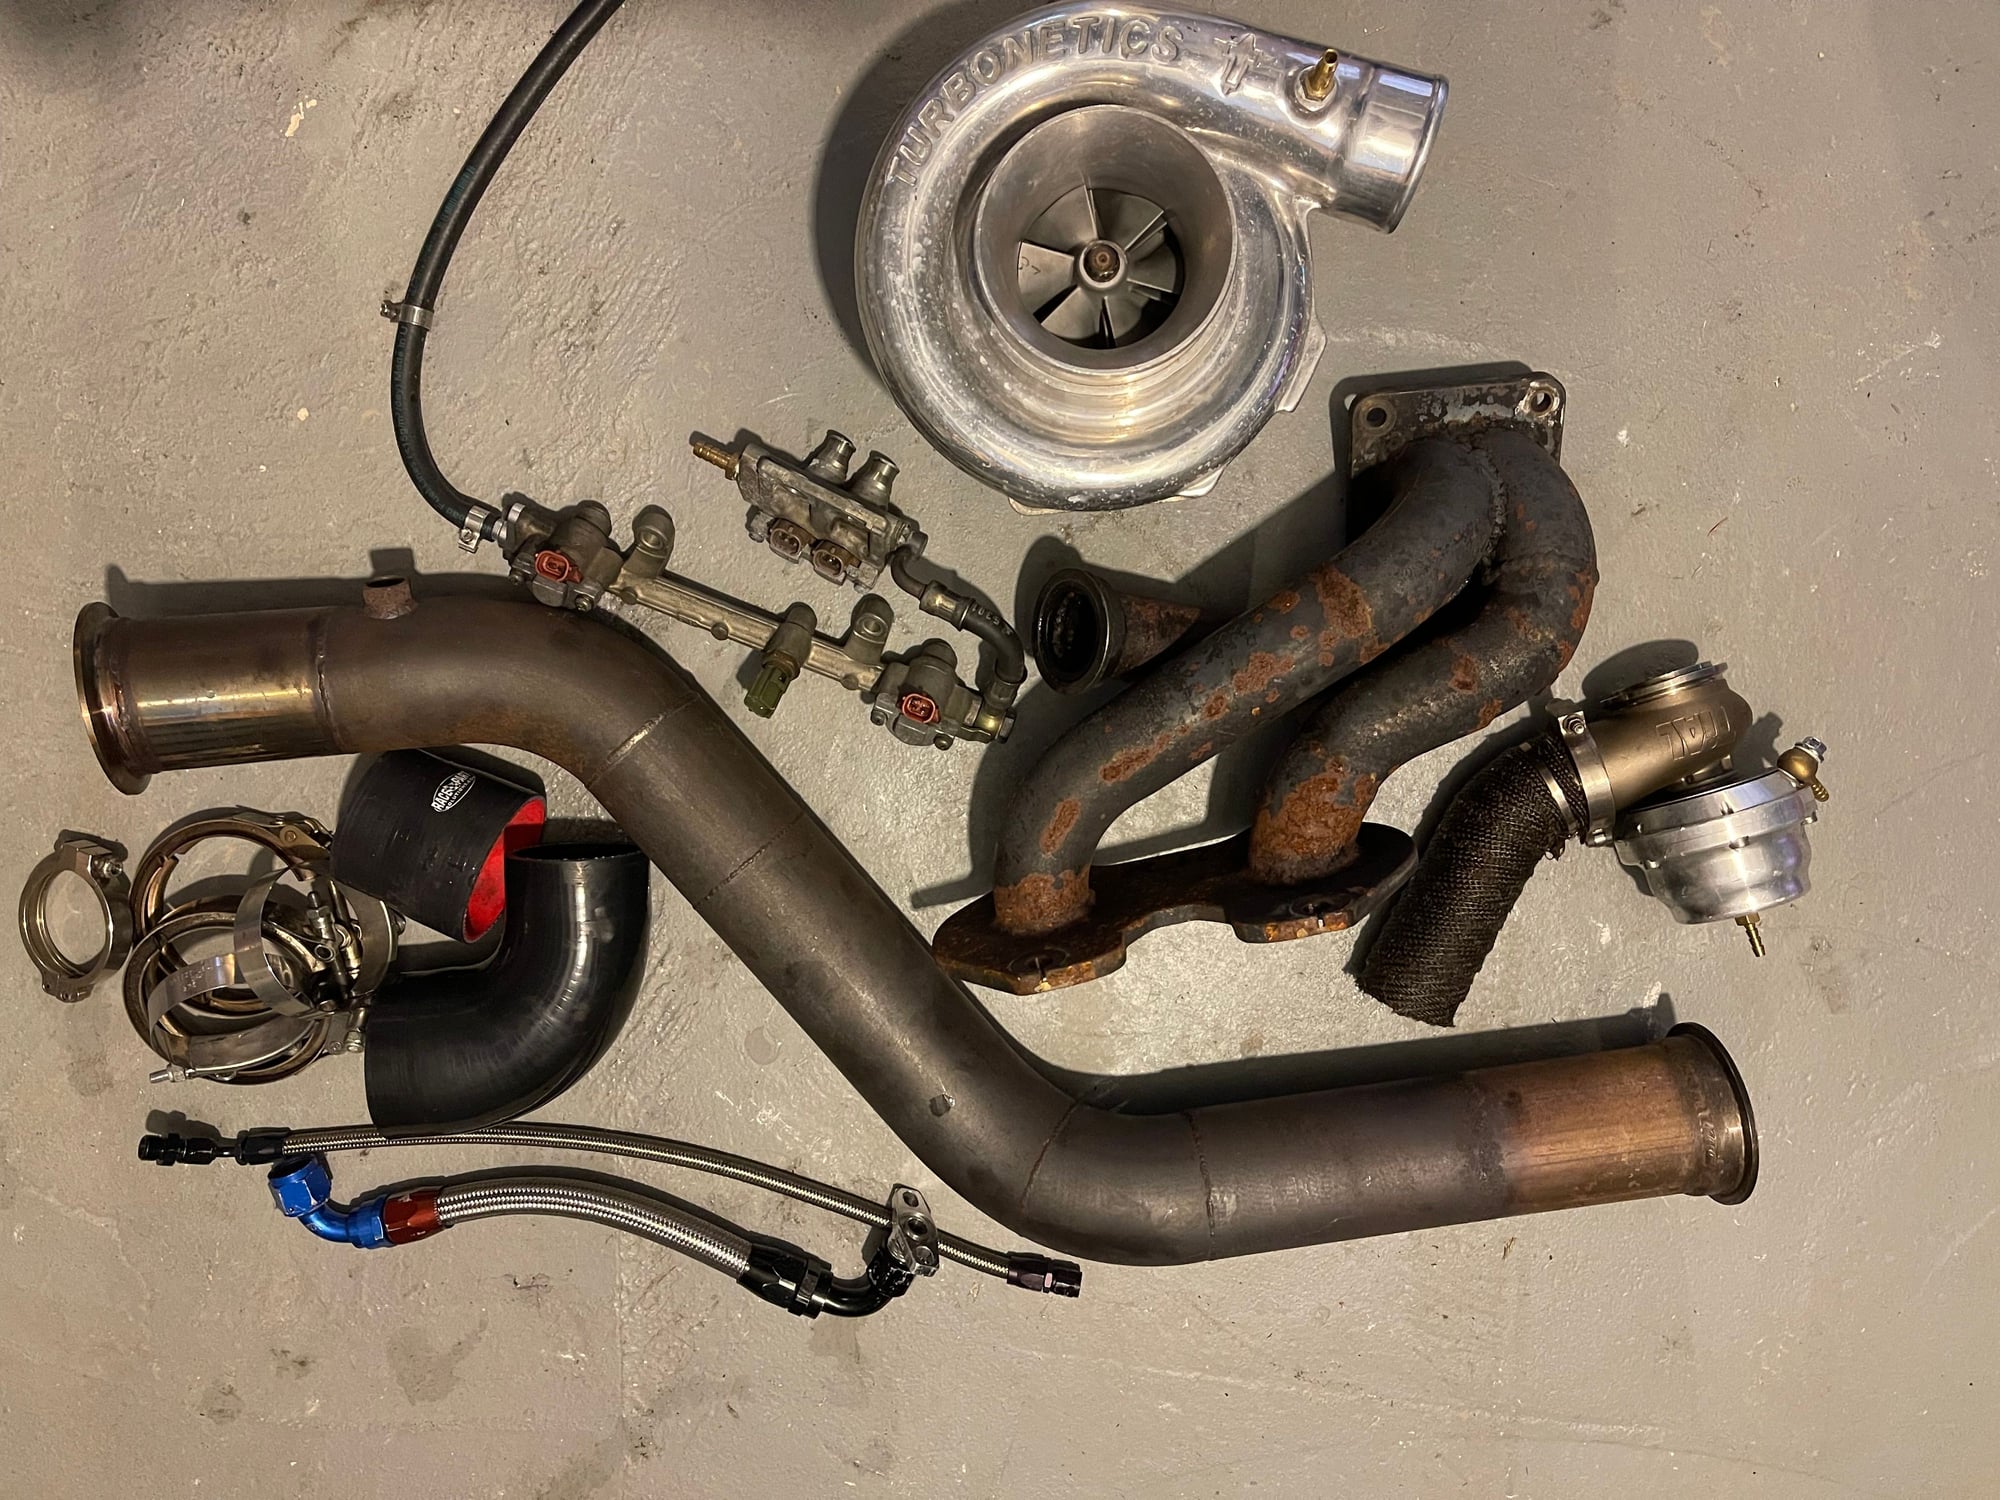 Engine - Power Adders - Single Turbo Kit (Turbonetics) - Used - 1993 Mazda RX-7 - Wall, NJ 07719, United States